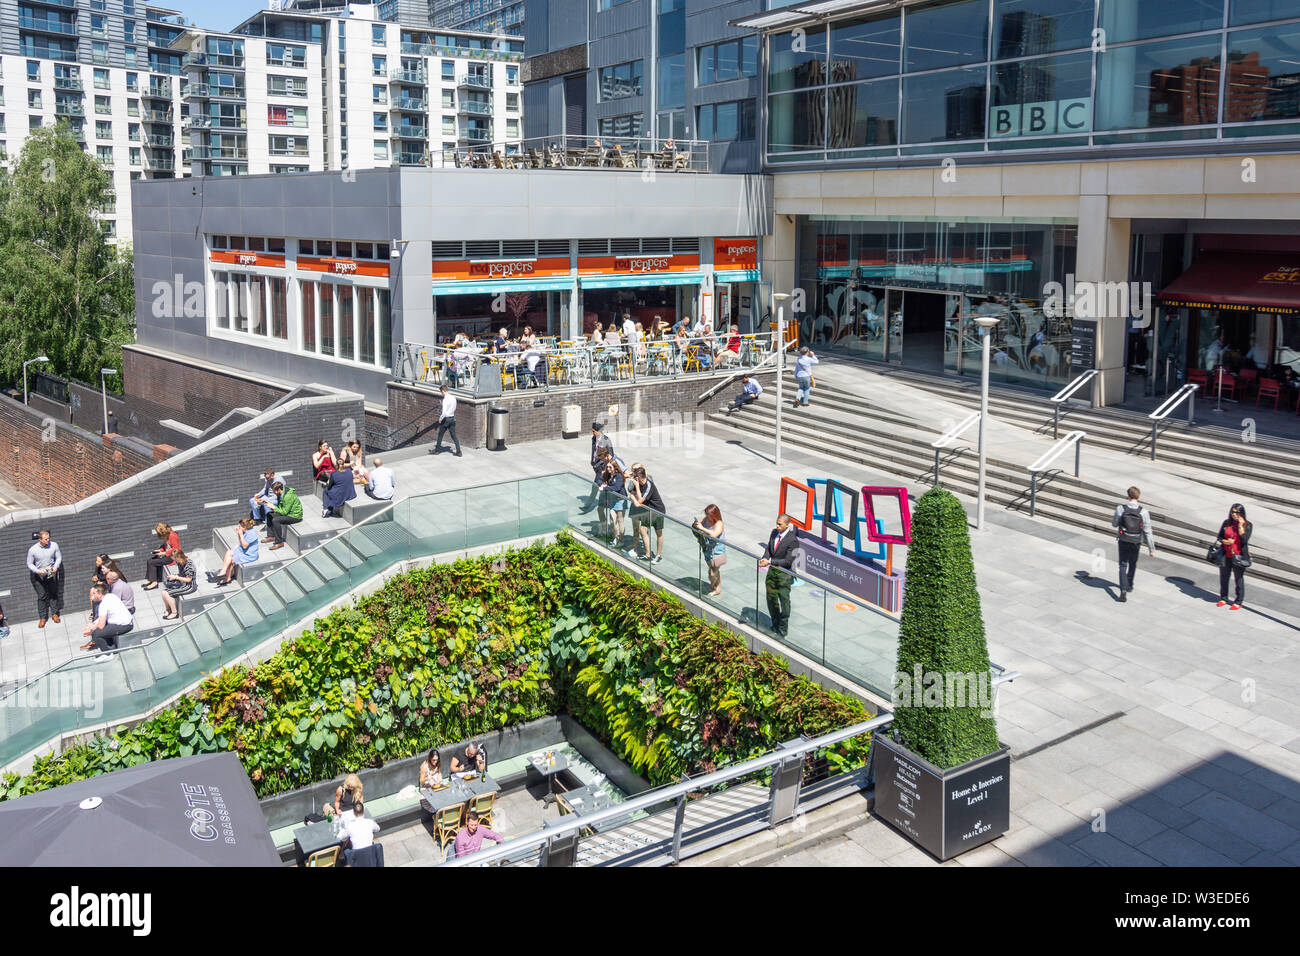 La entrada al centro comercial de Buzón, Wharfside Street, Birmingham, West Midlands, Inglaterra, Reino Unido Foto de stock